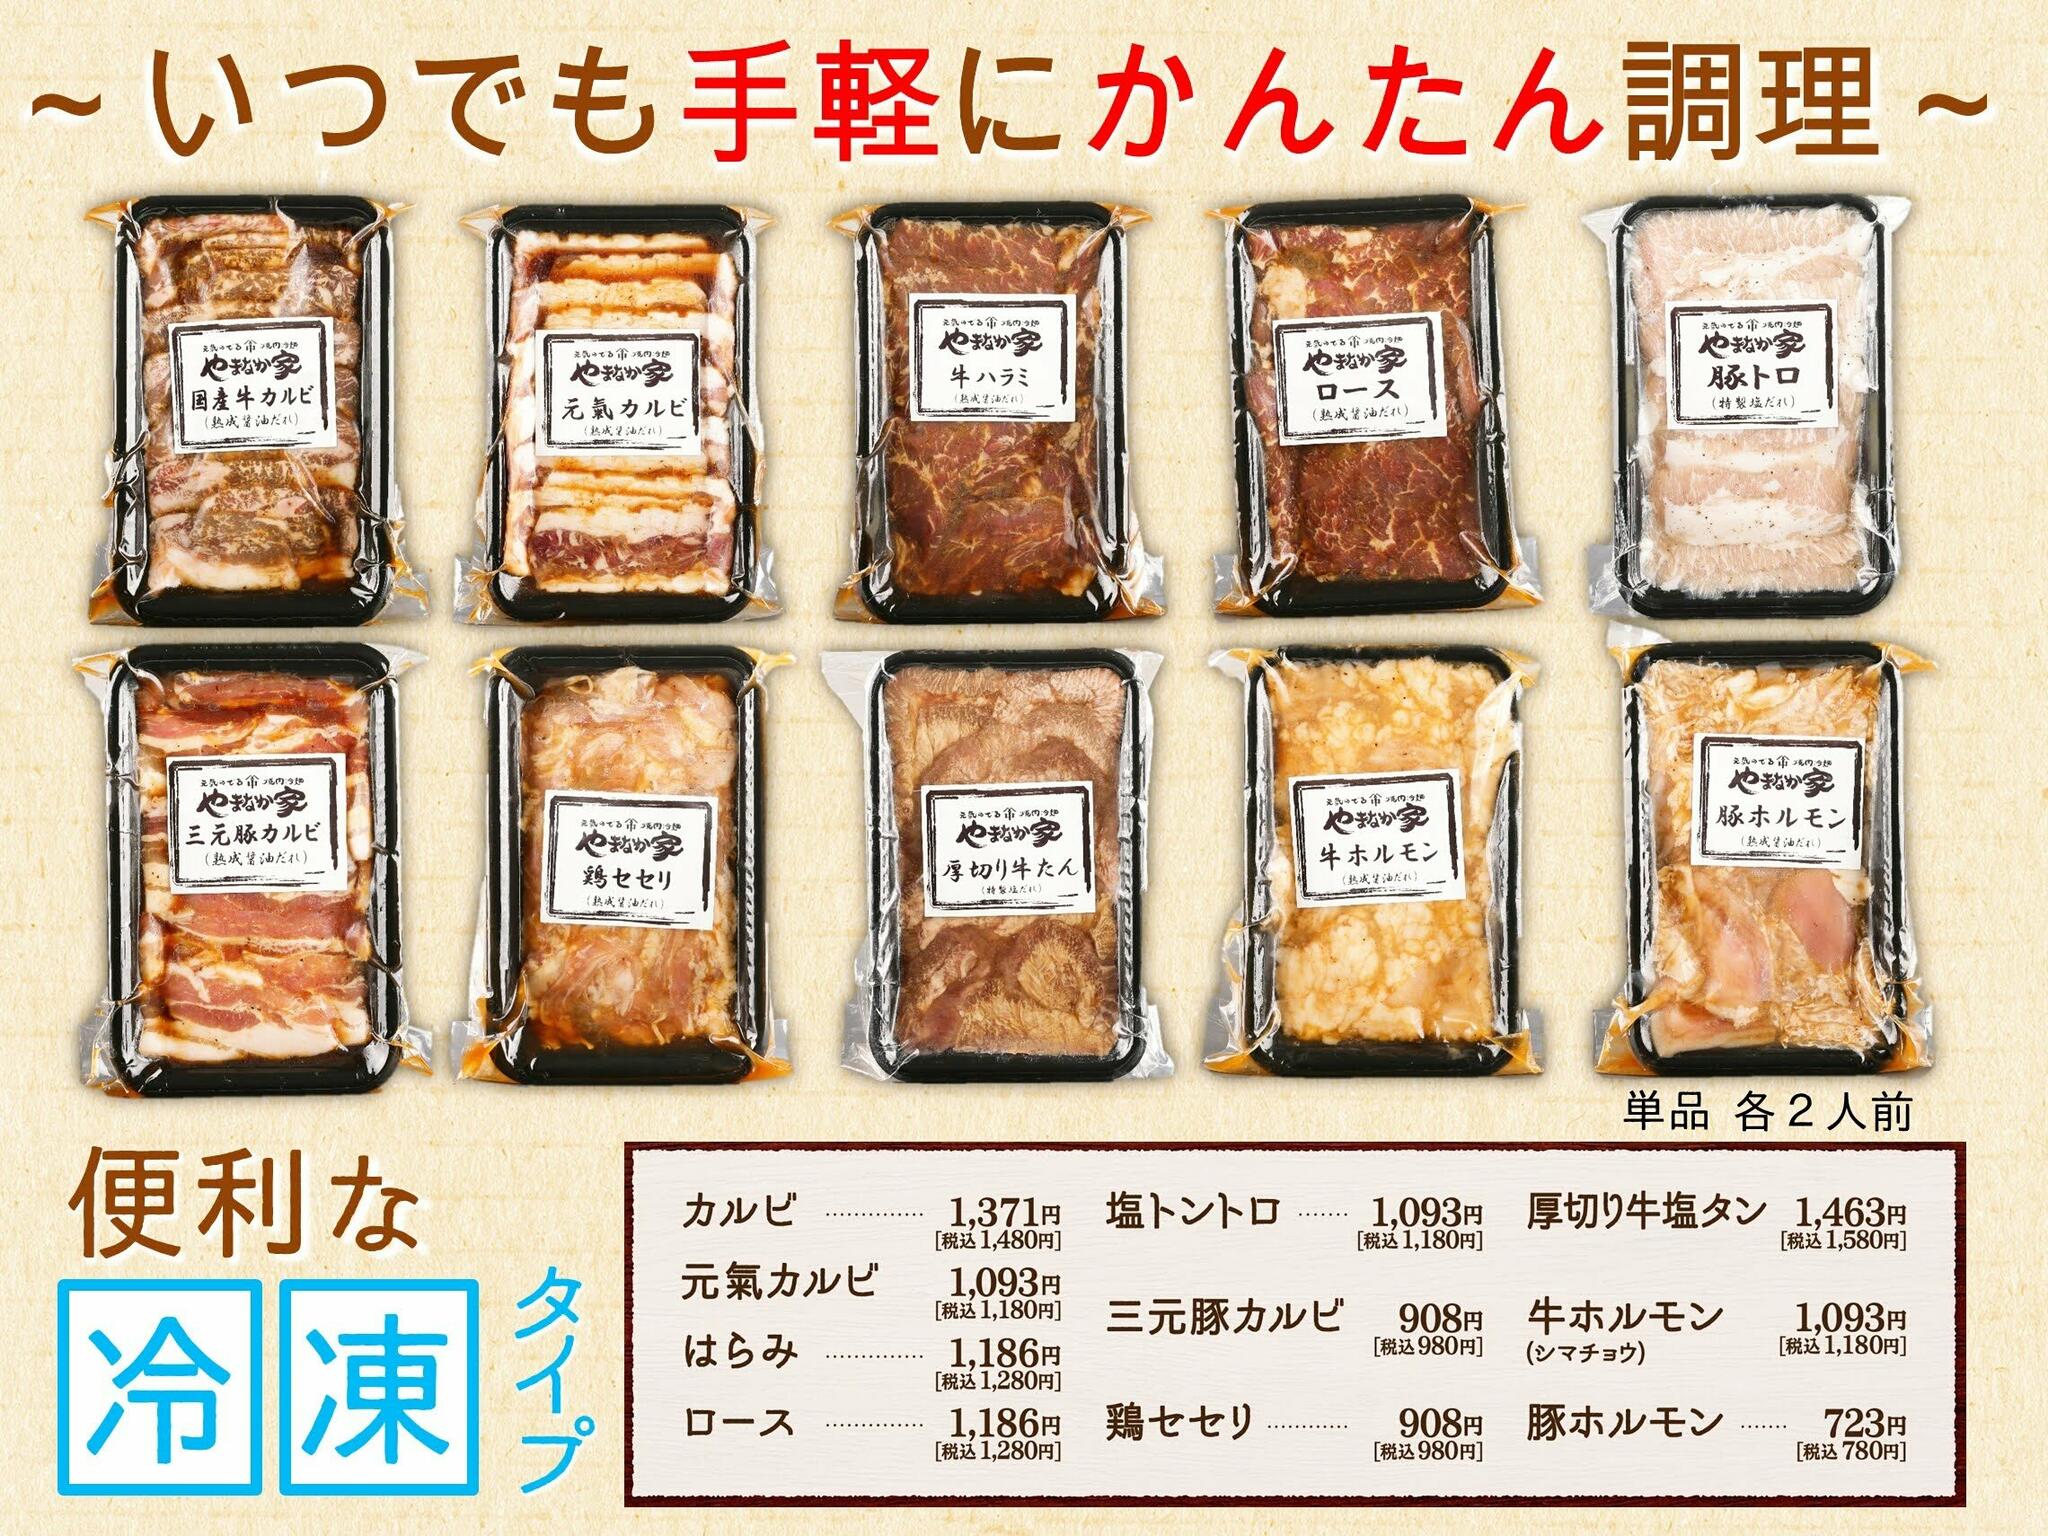 焼肉冷麺やまなか家 北上店からのお知らせ(◆◆お家でも《やまなか家》の味を◆◆お持ち帰り用)に関する写真